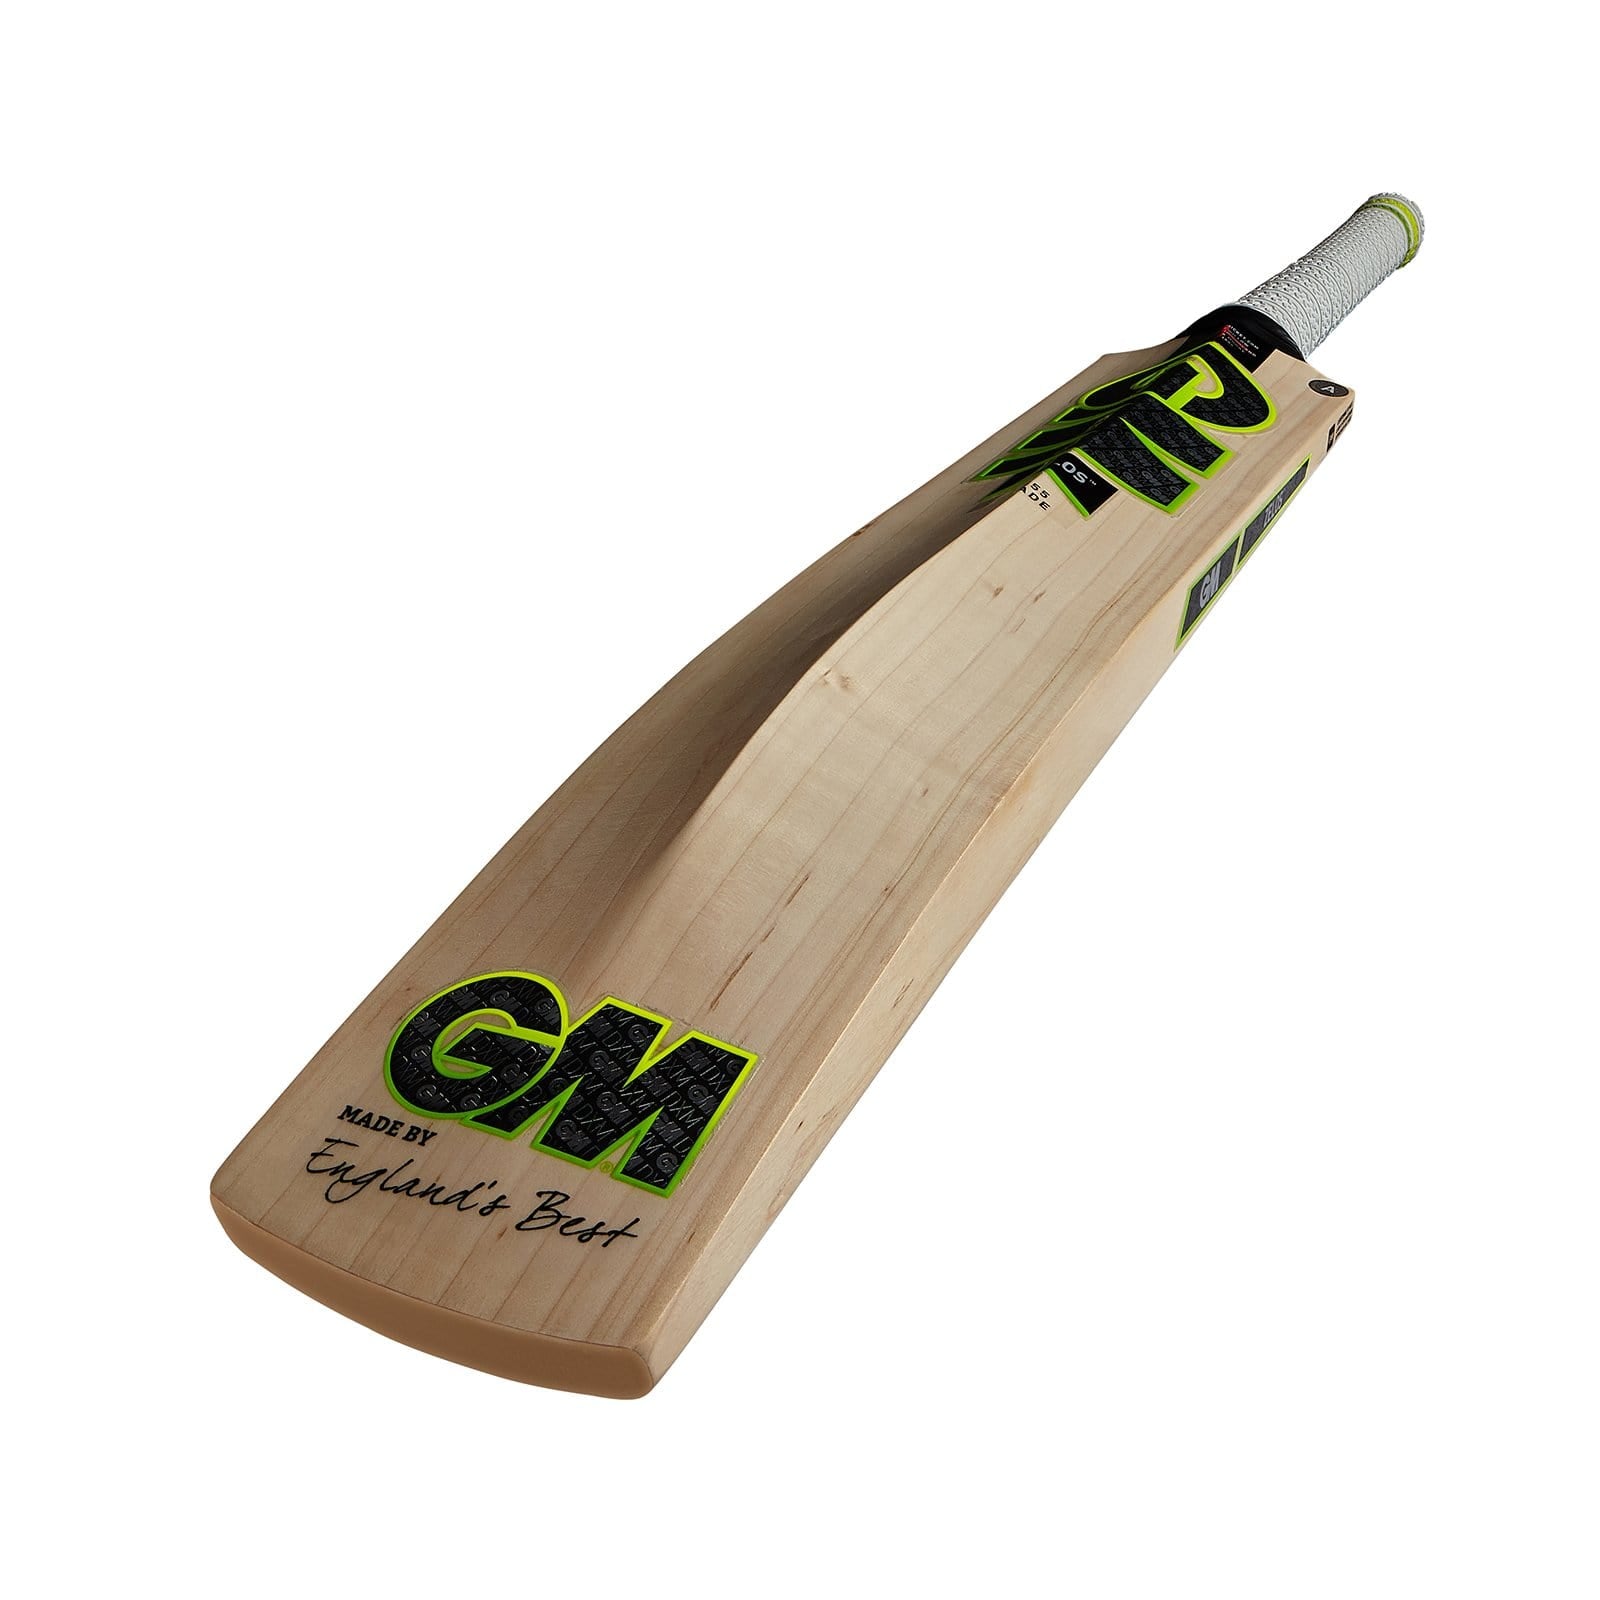 Gunn & Moore Cricket Bats GM Zelos 101 Adult Cricket Bat